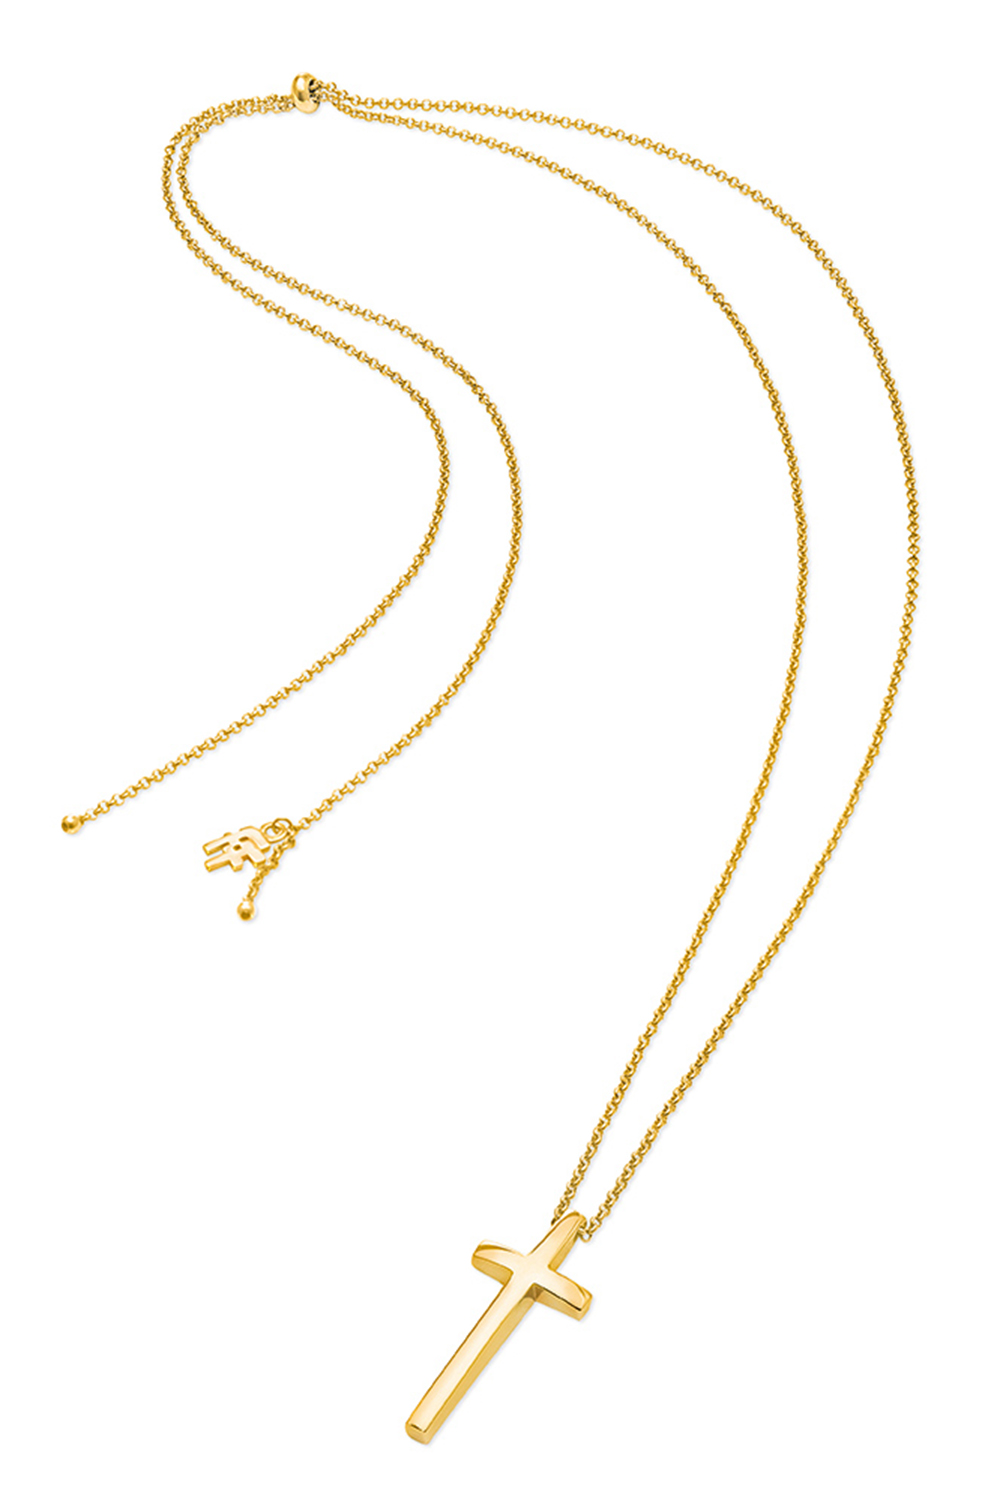 Γυναικεία/Αξεσουάρ/Κοσμήματα/Κολιέ FOLLI FOLLIE - Γυναικείο μακρύ κολιέ από ορείχαλκο FOLLI FOLLIE CARMA χρυσό